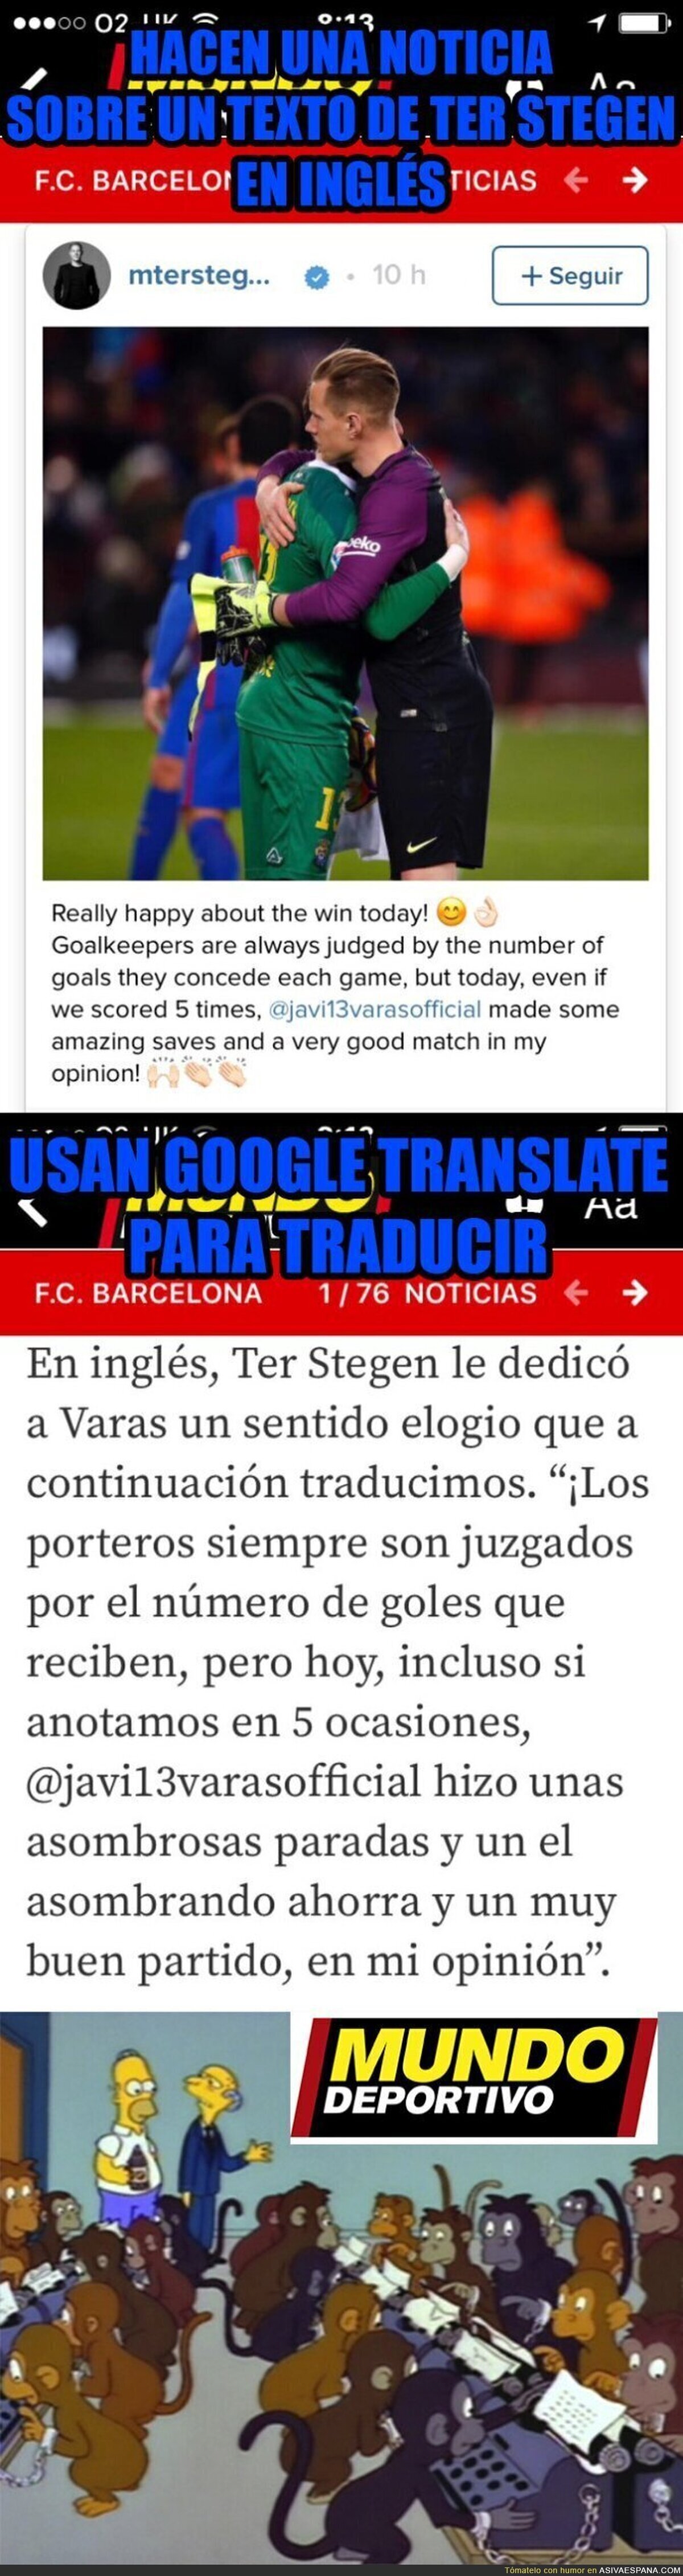 El nivel de El Mundo Deportivo traduciendo textos